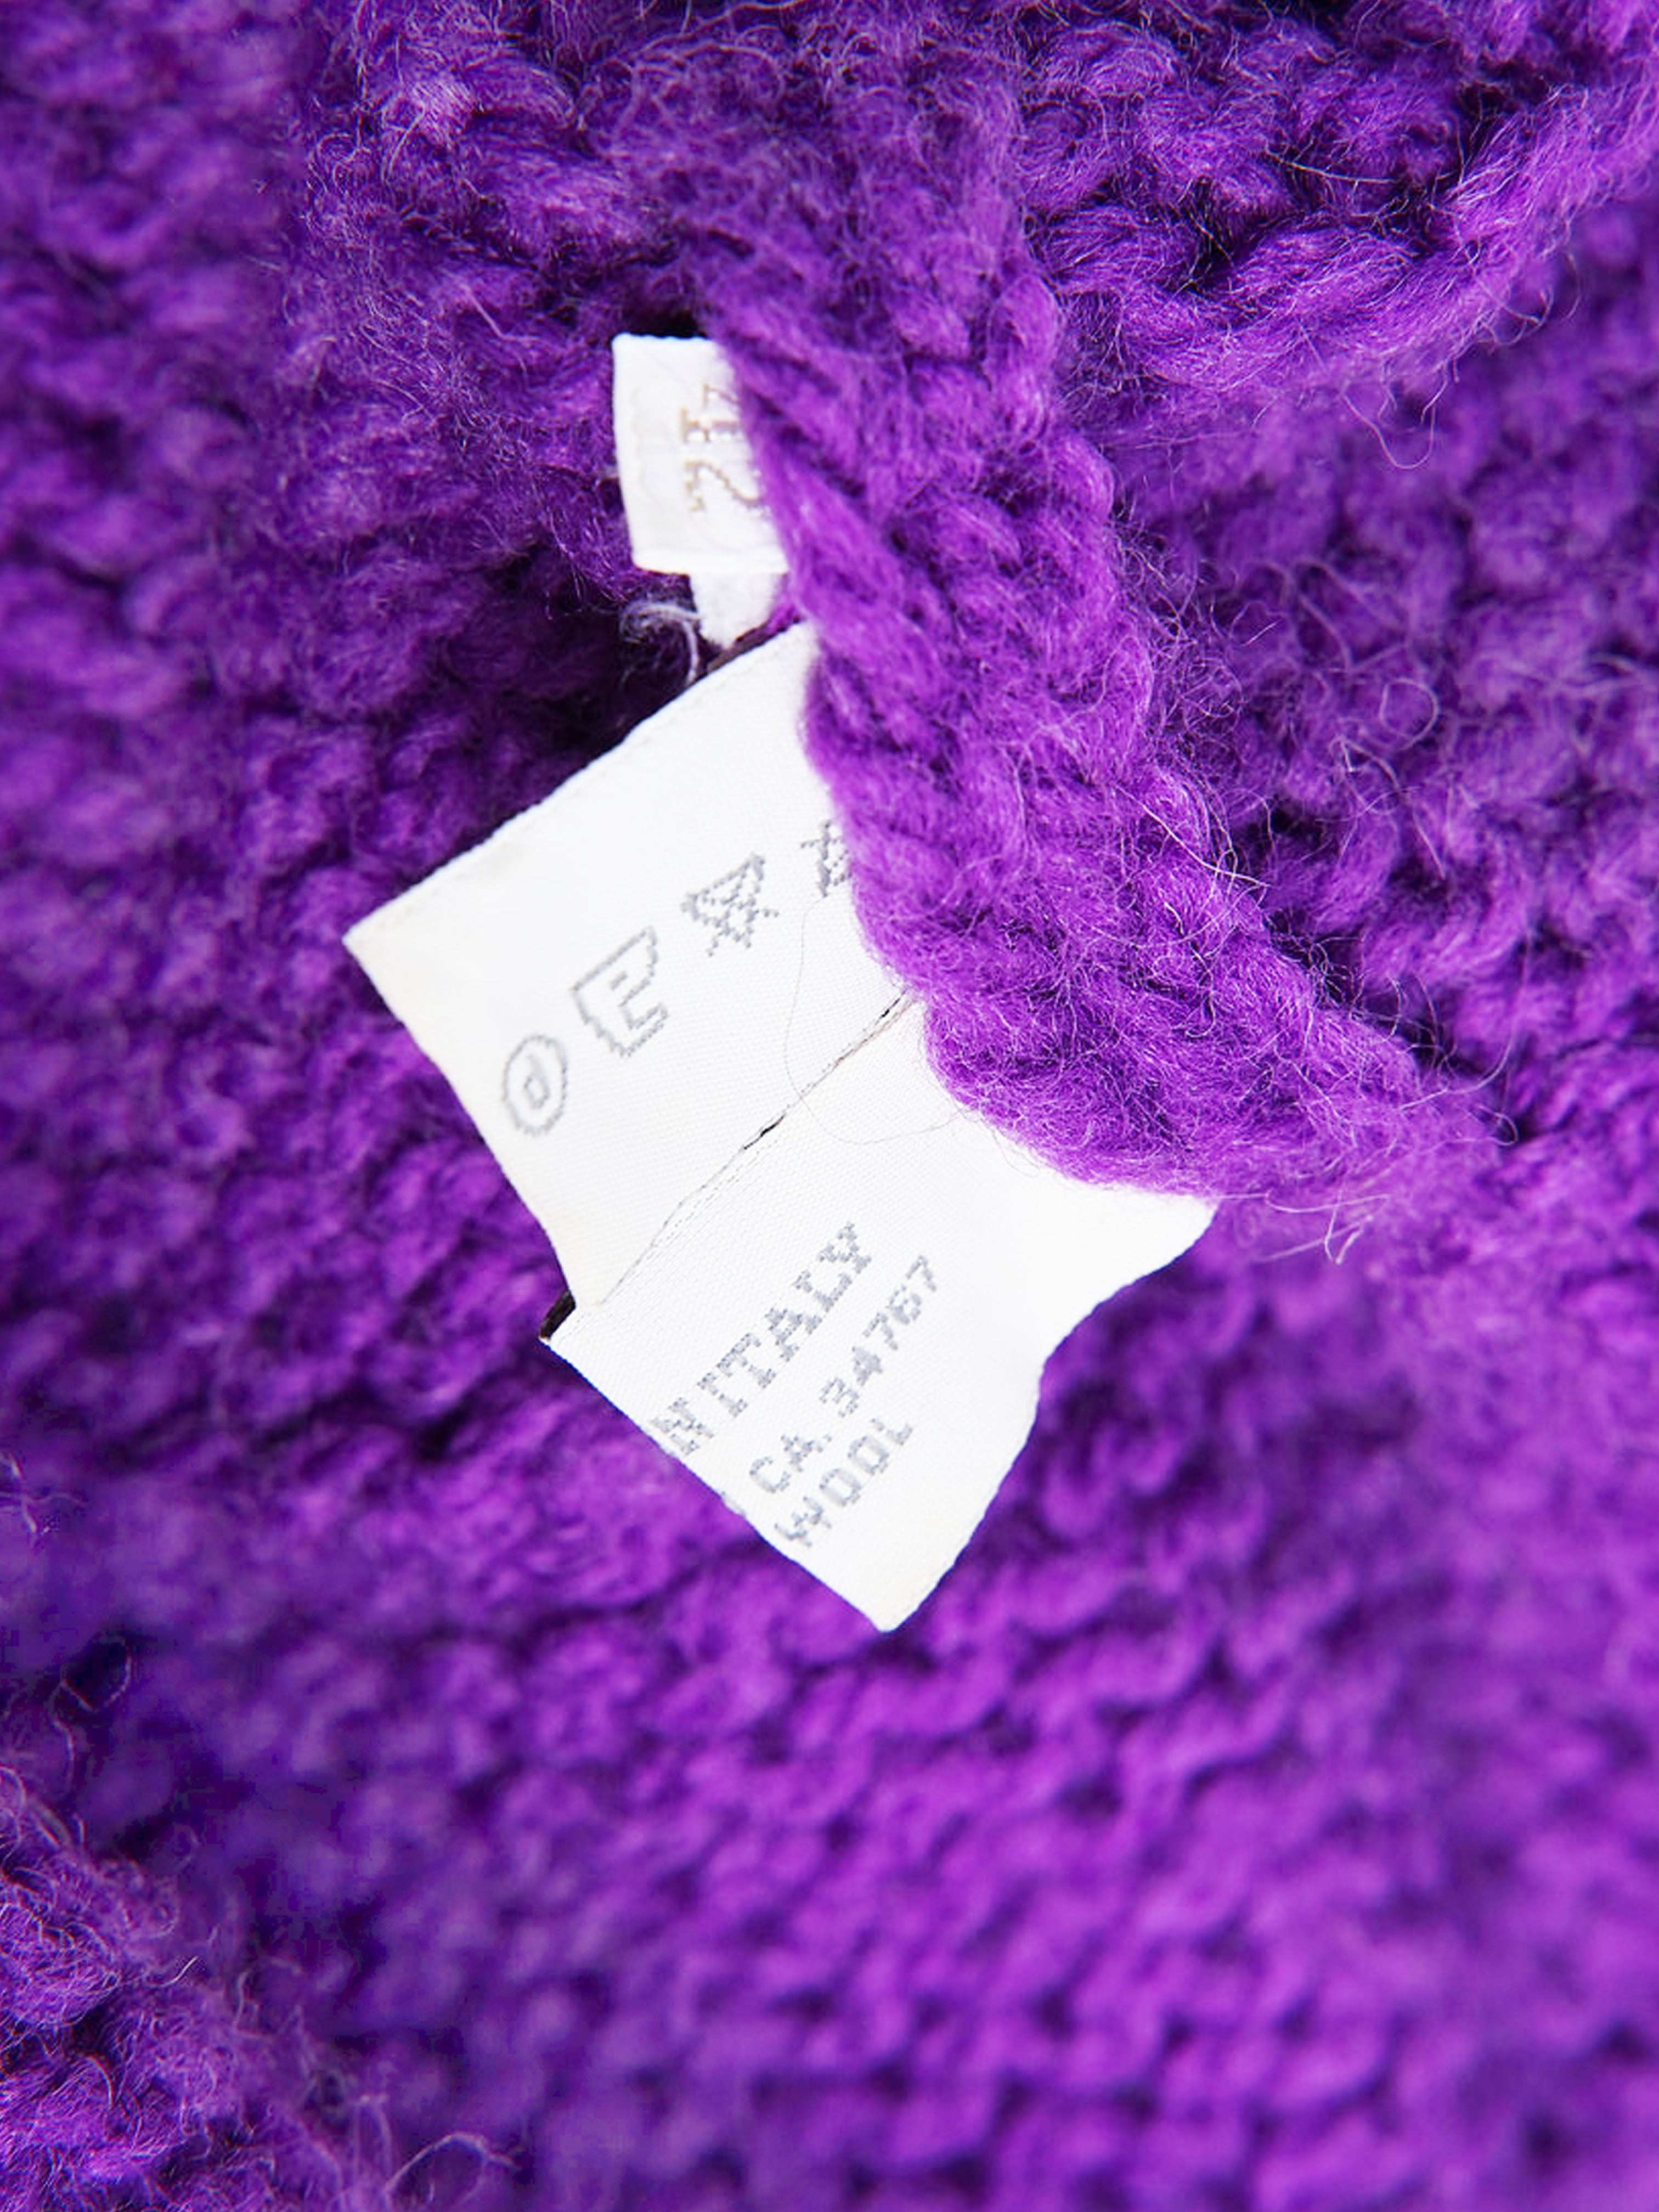 Miu Miu FW 1999 Purple Knit Sweater